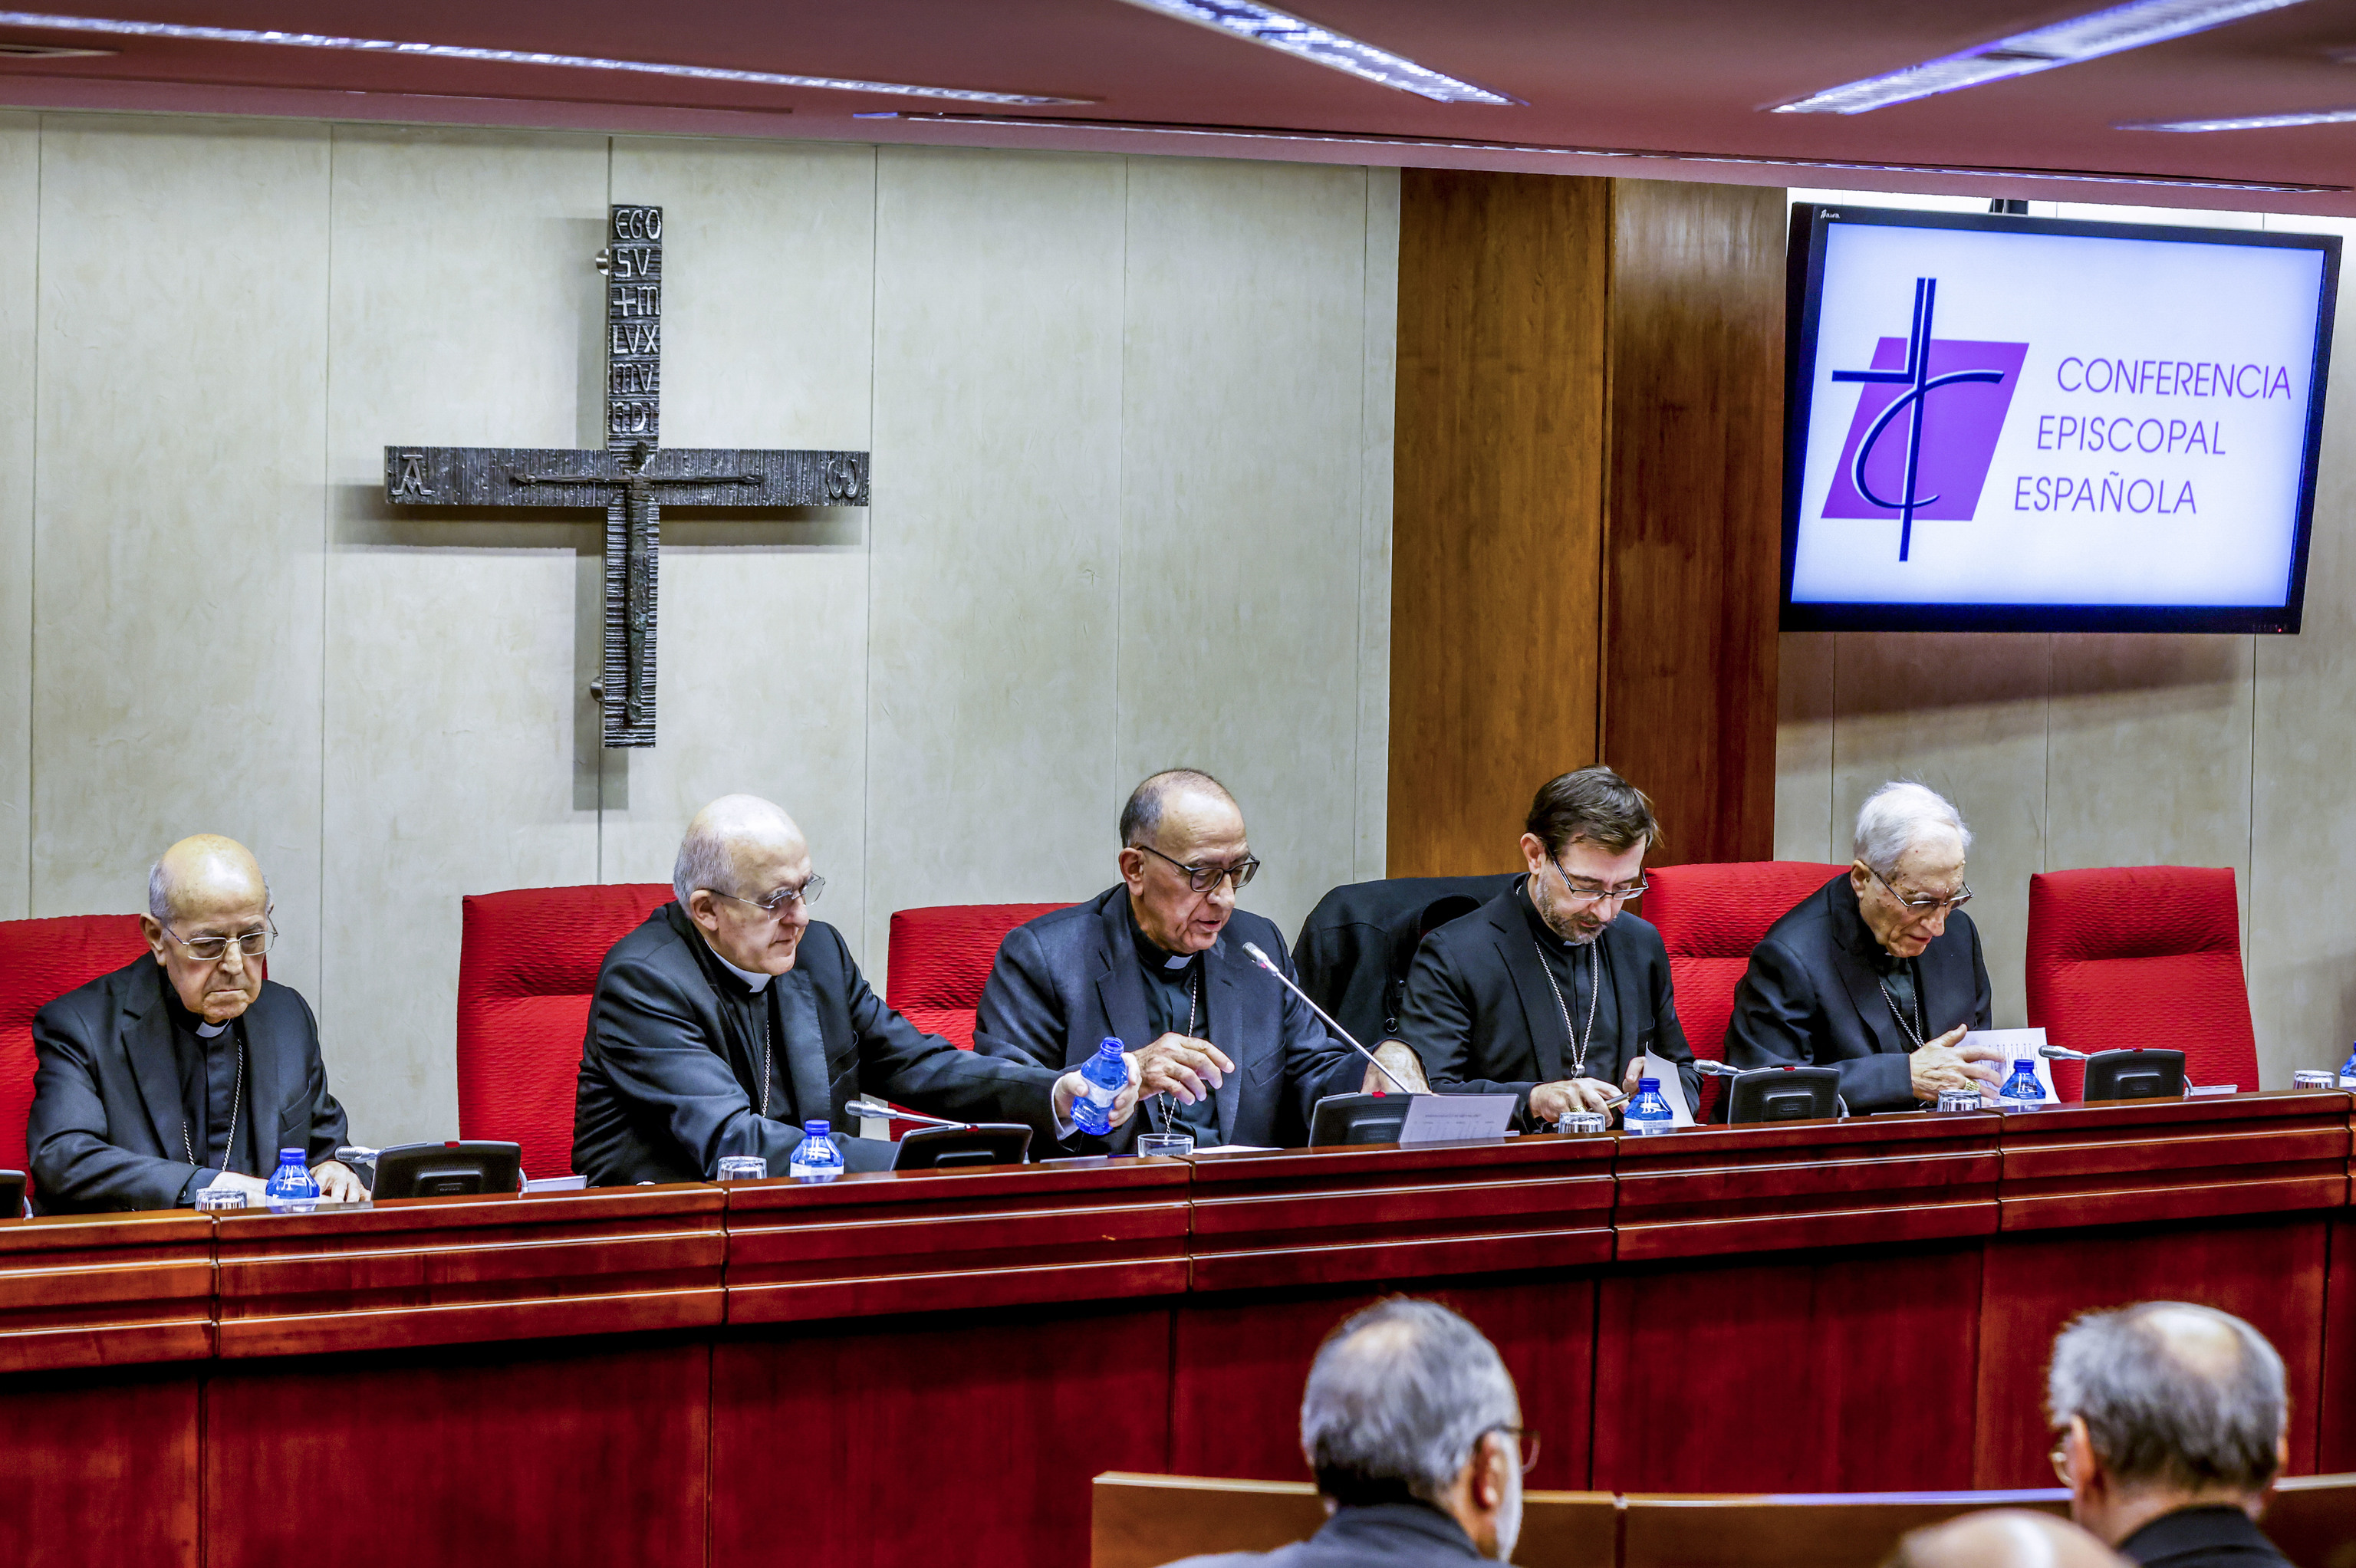 Reunión de la Asamblea Plenaria de la Conferencia Episcopal Española, presidida por Juan José Omella (centro).